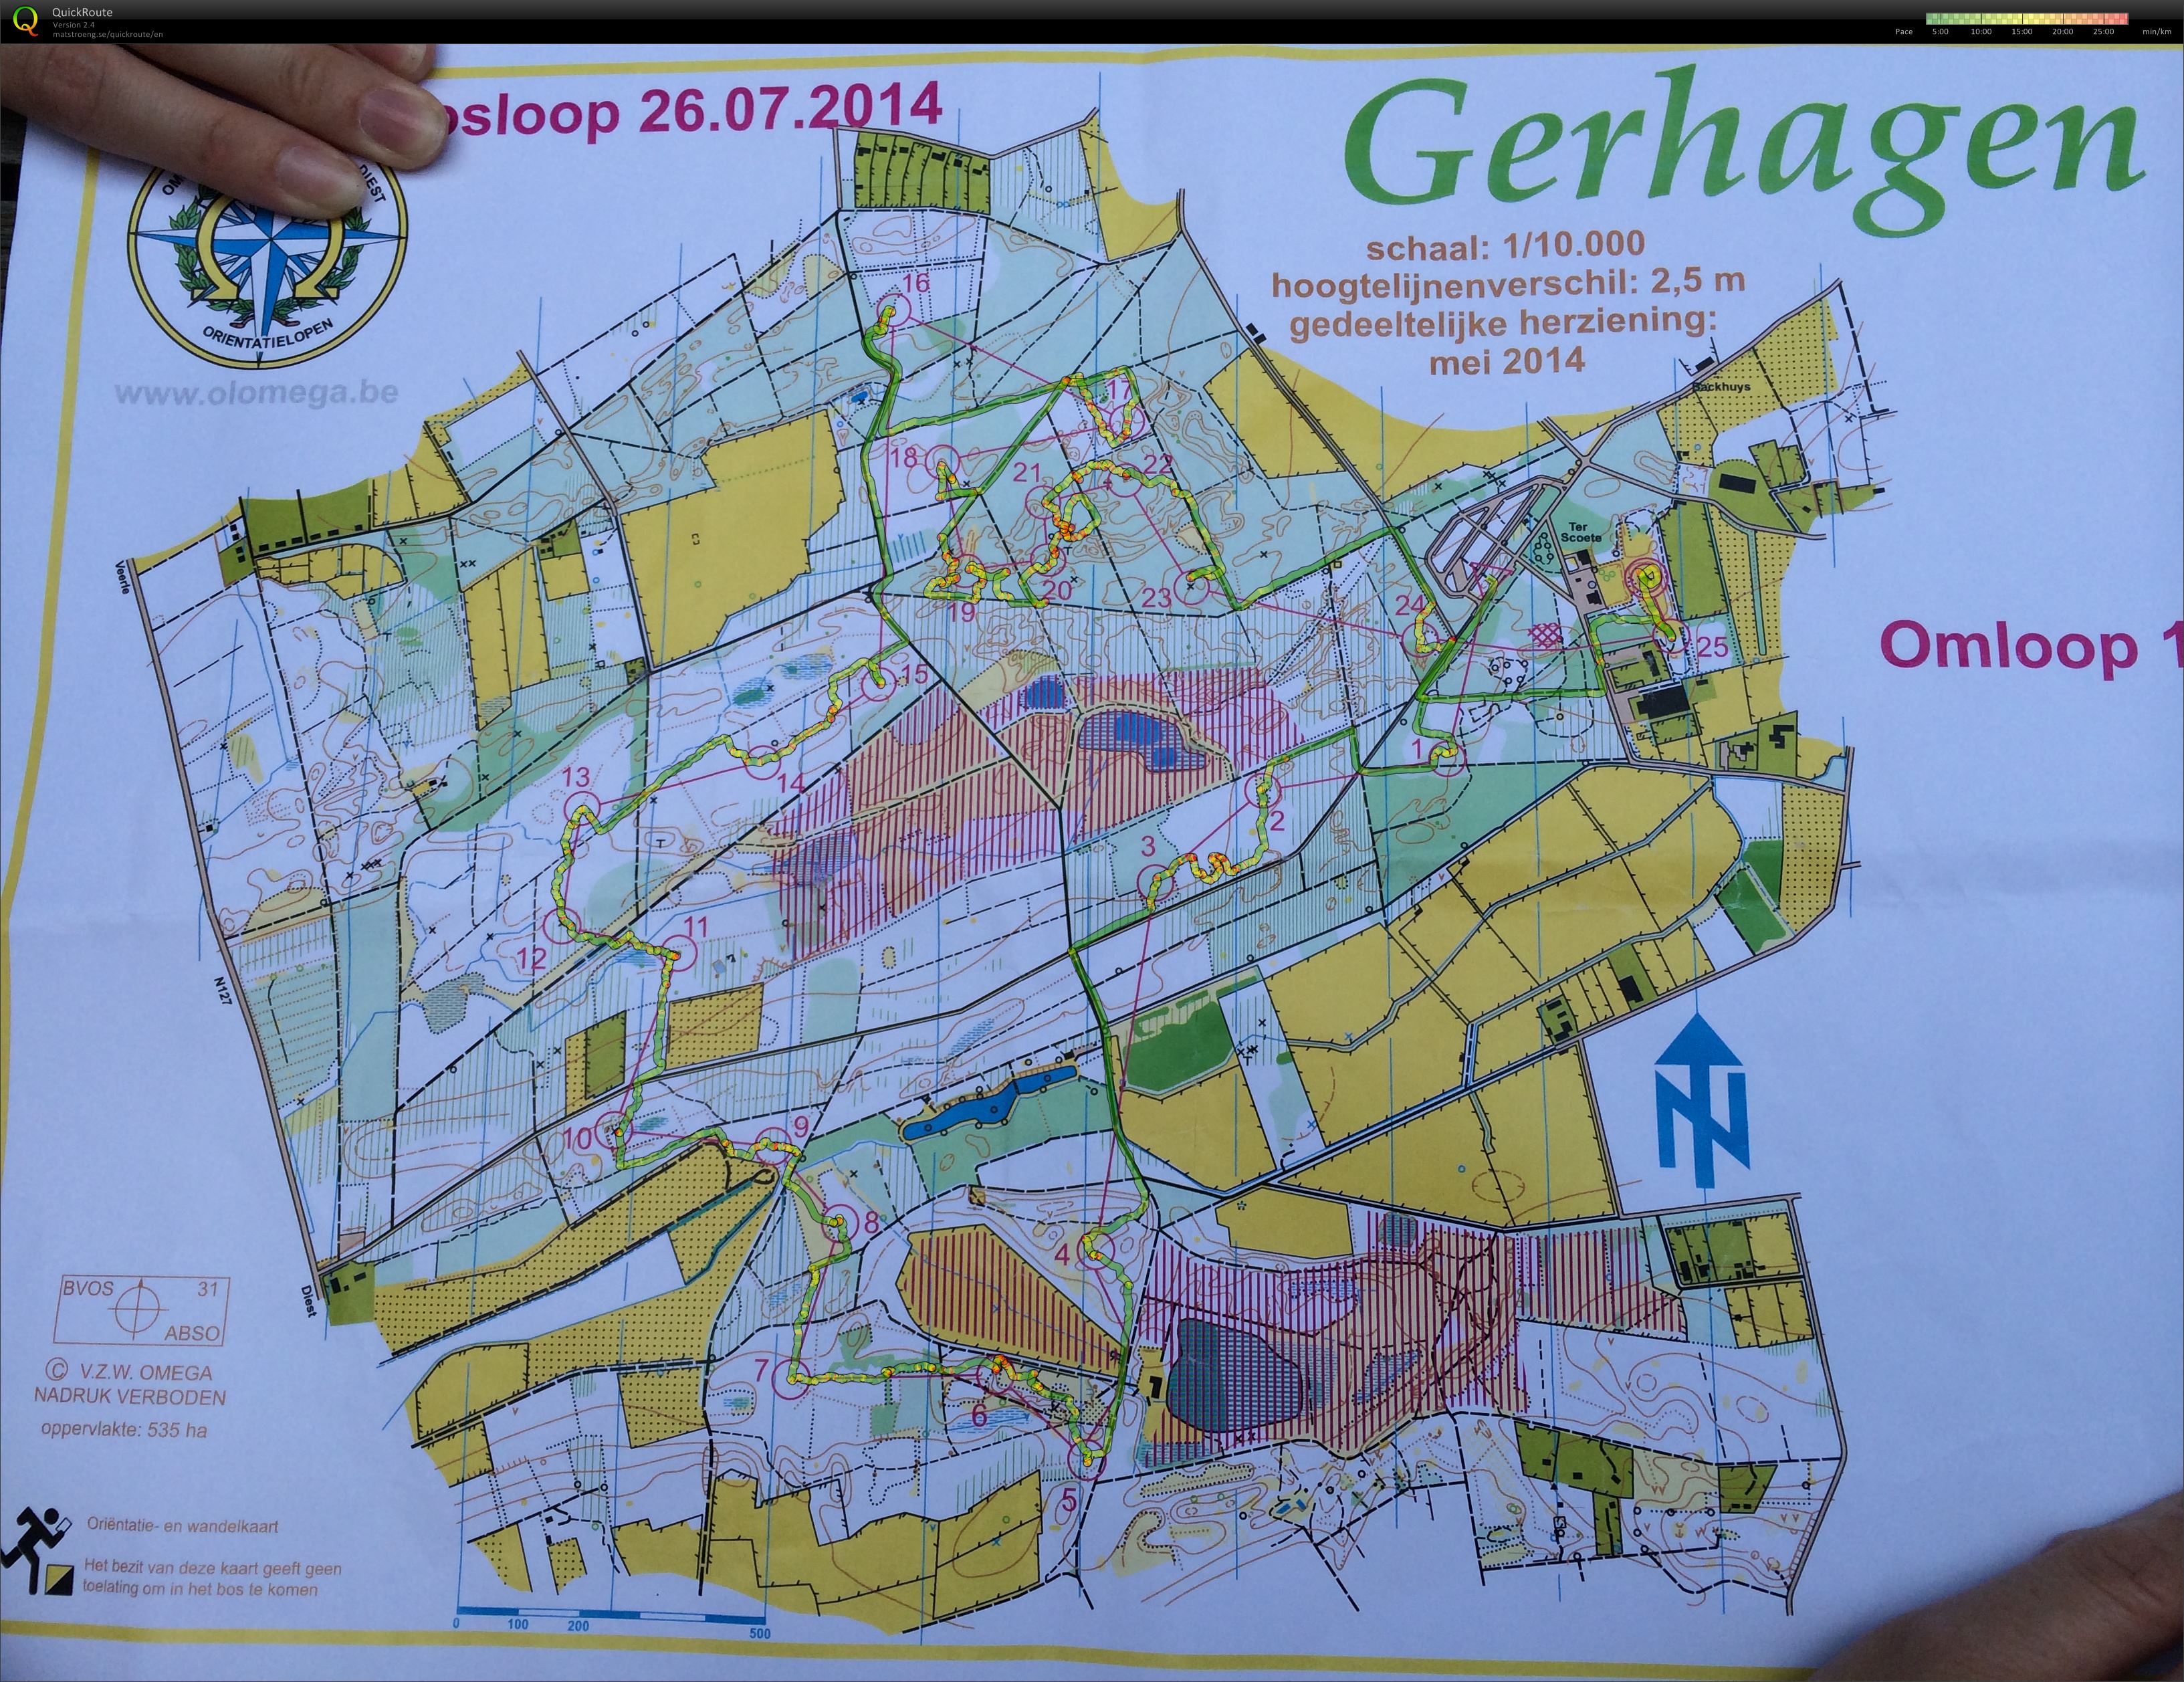 Regionale Gerhagen (26.07.2014)